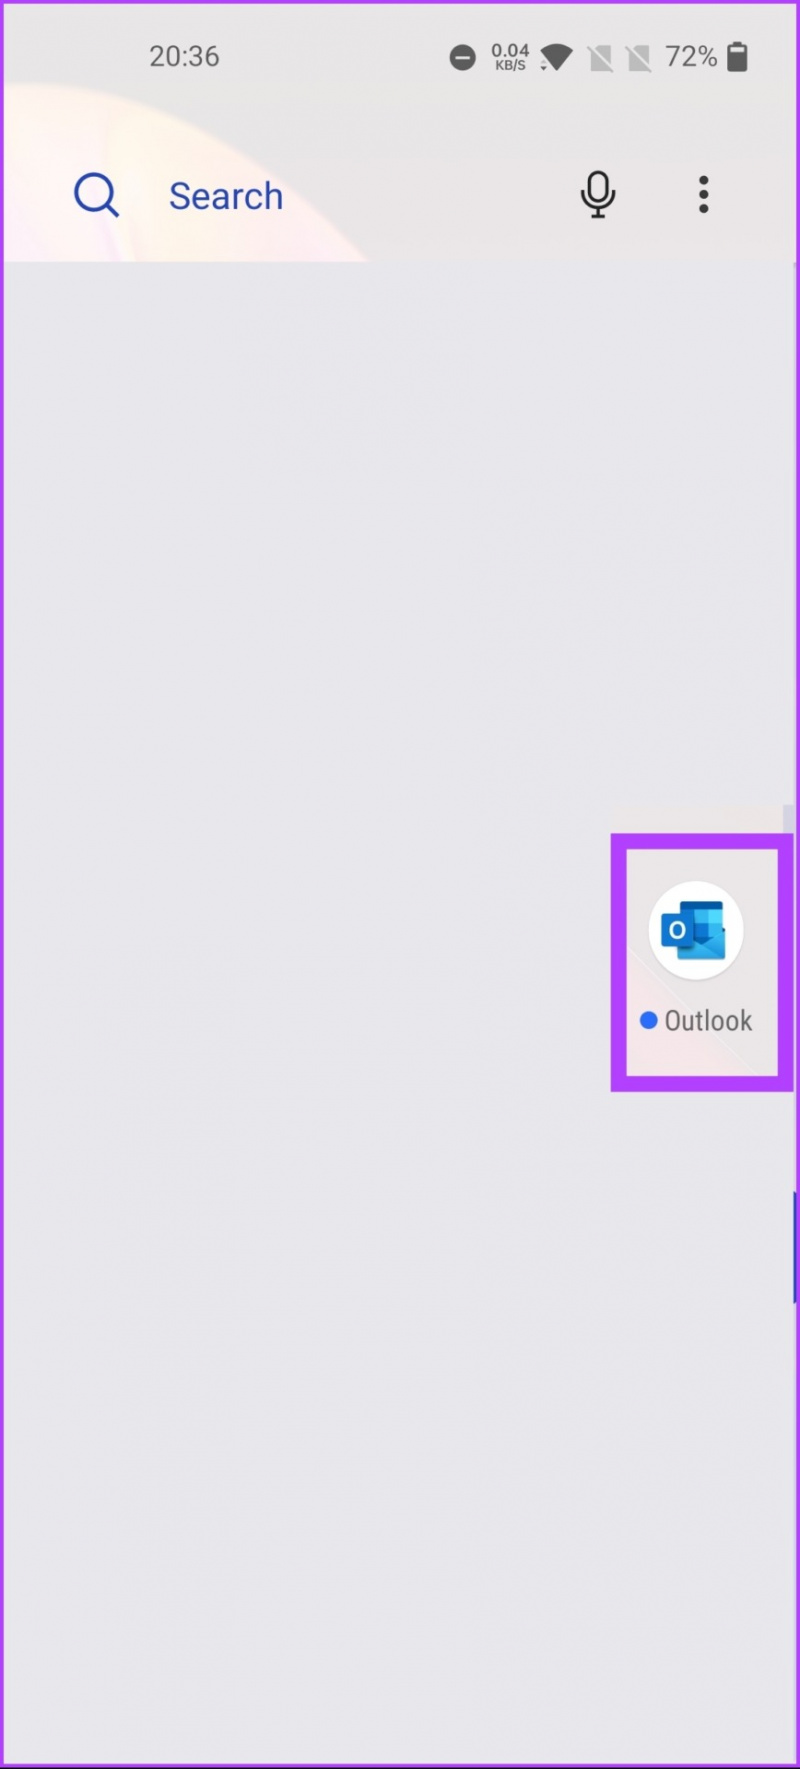   Avvia Outlook dal cassetto delle app